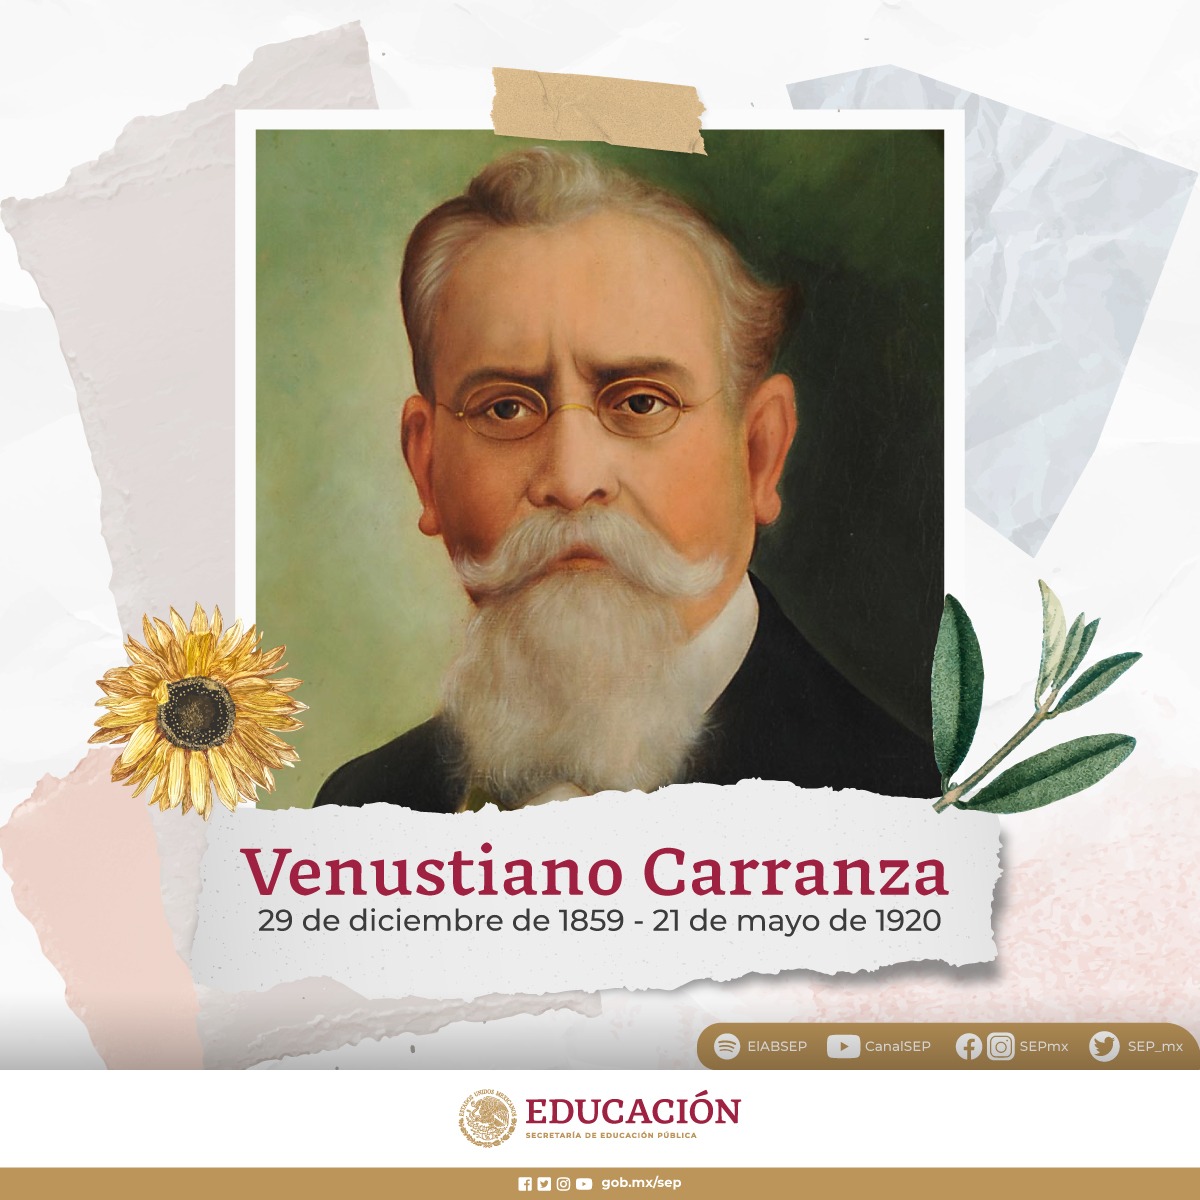 Conmemoramos el aniversario luctuoso de Venustiano Carranza. Él formó parte del movimiento antirreeleccionista de Madero, fue presidente de México y además, en 1917, promulgó la Constitución Política de los Estados Unidos Mexicanos.